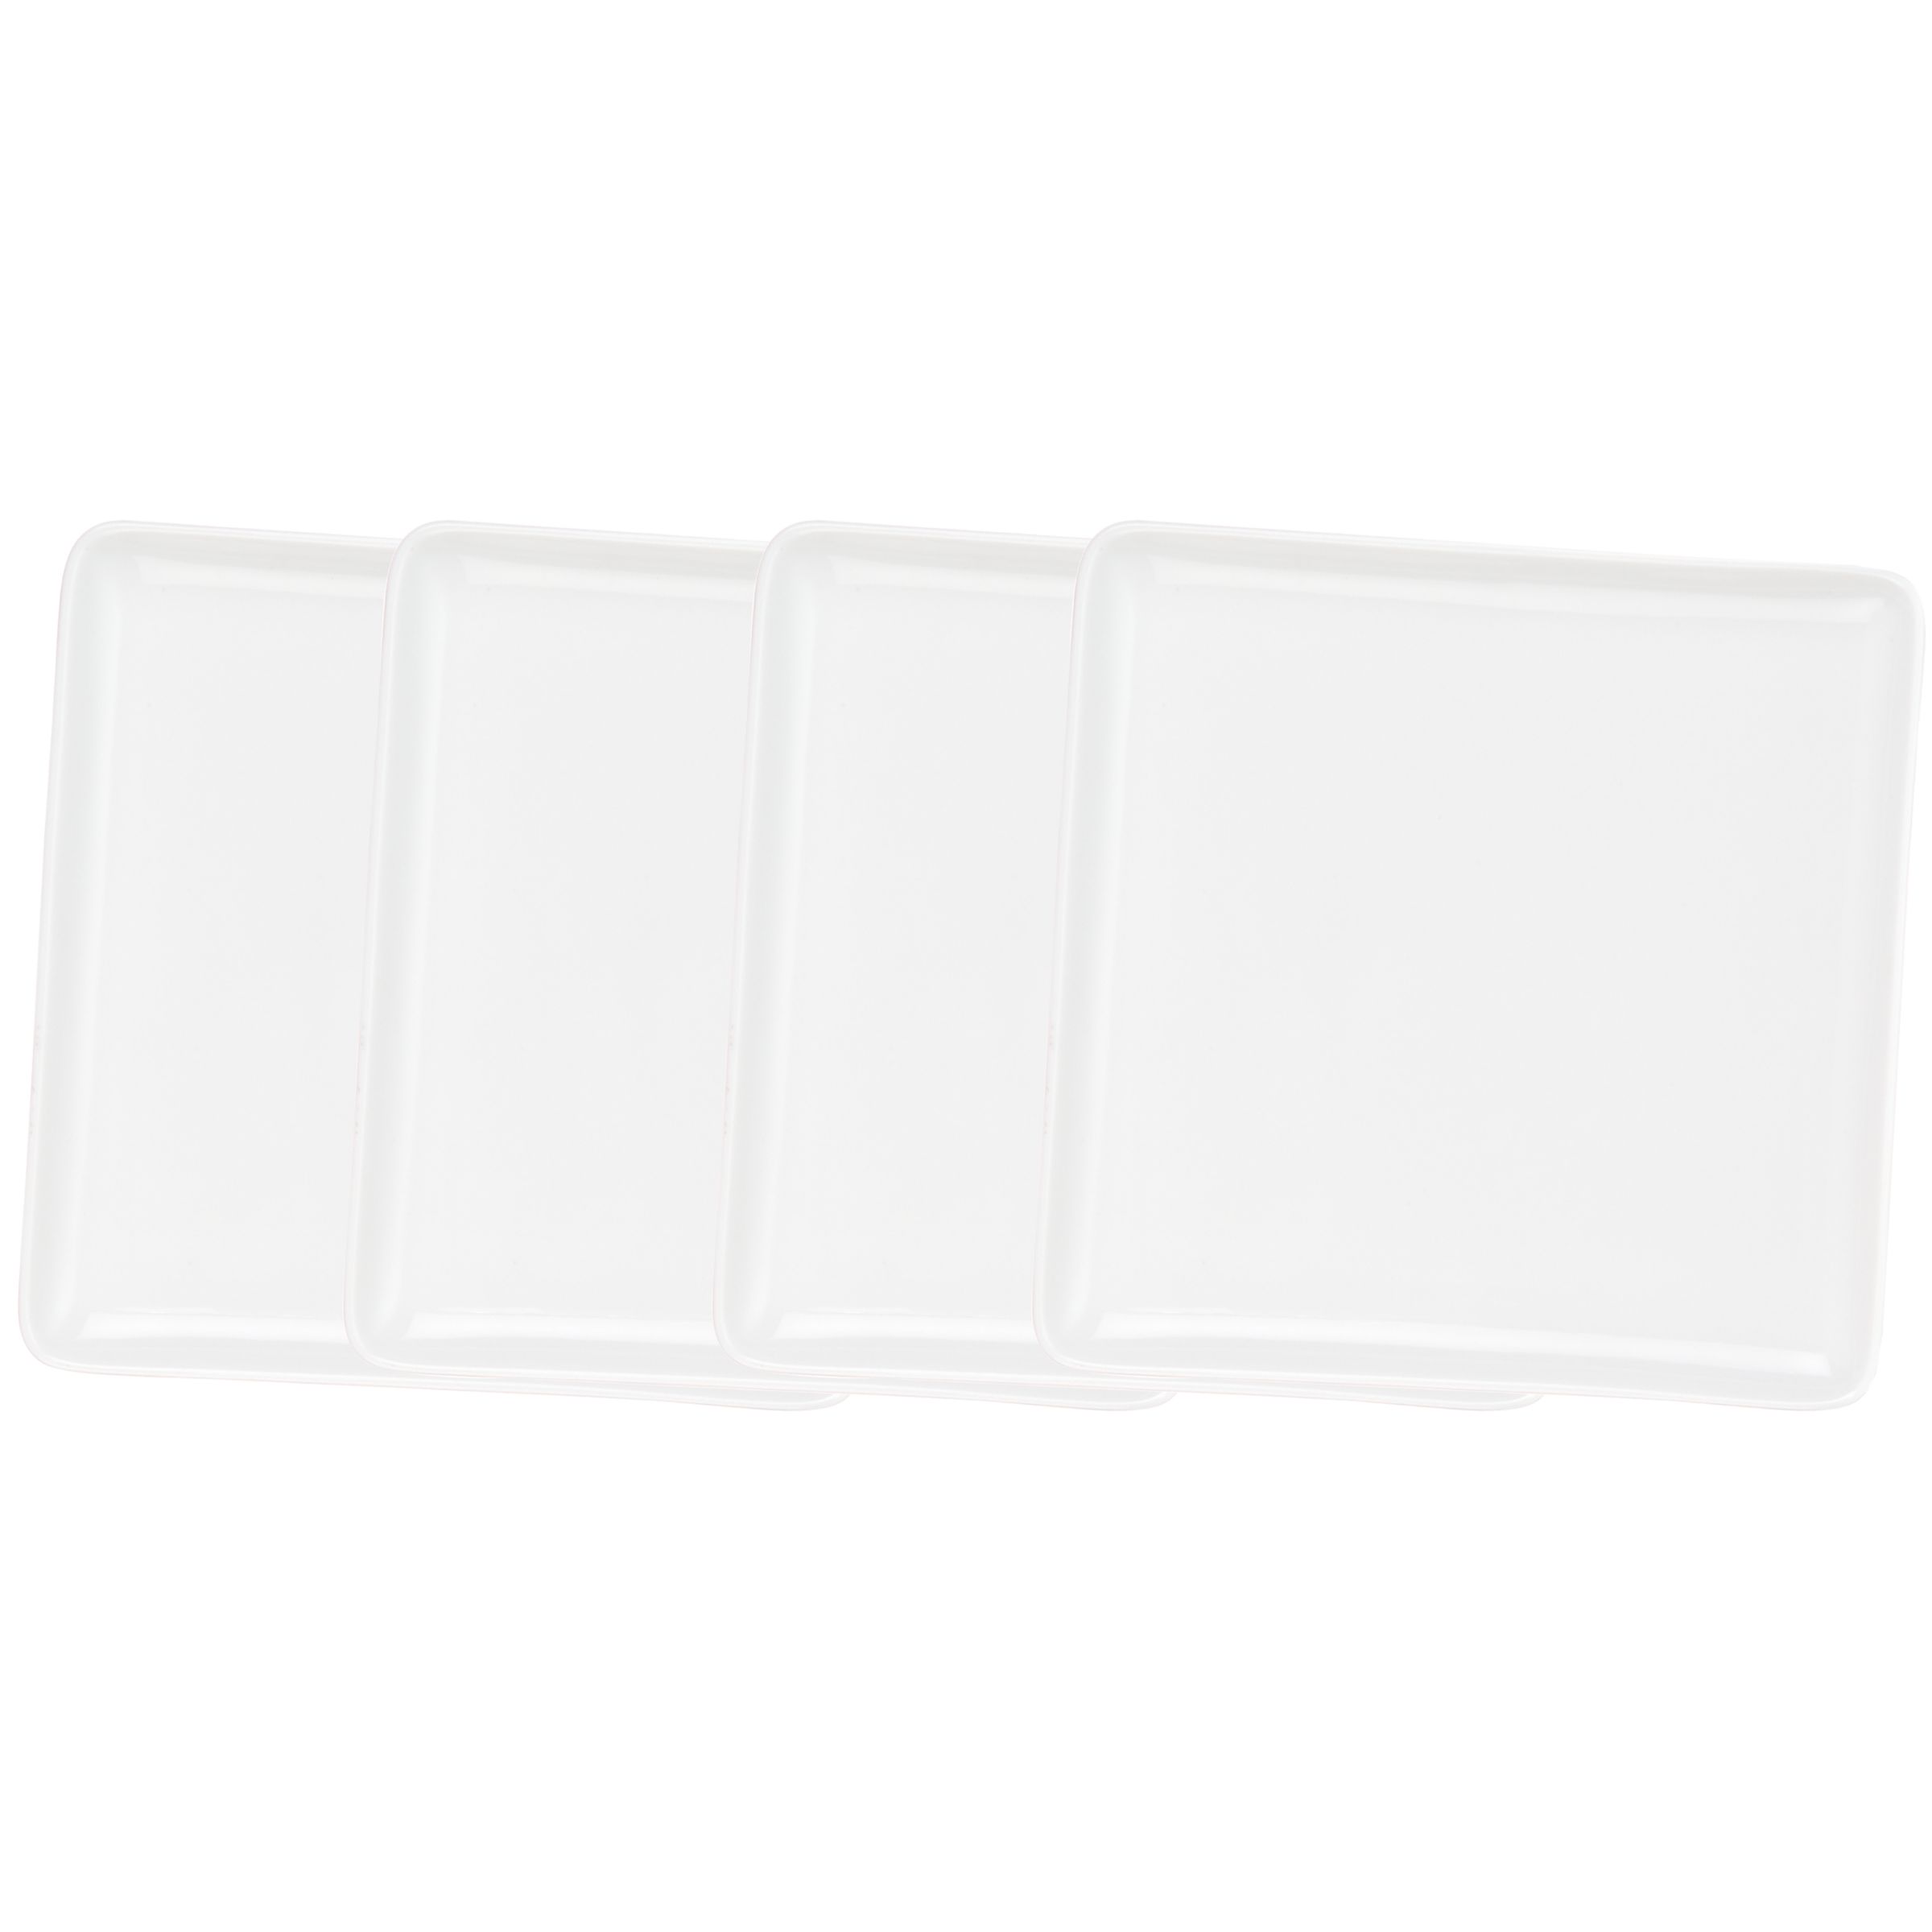 Oriental White Plates, Box of 4